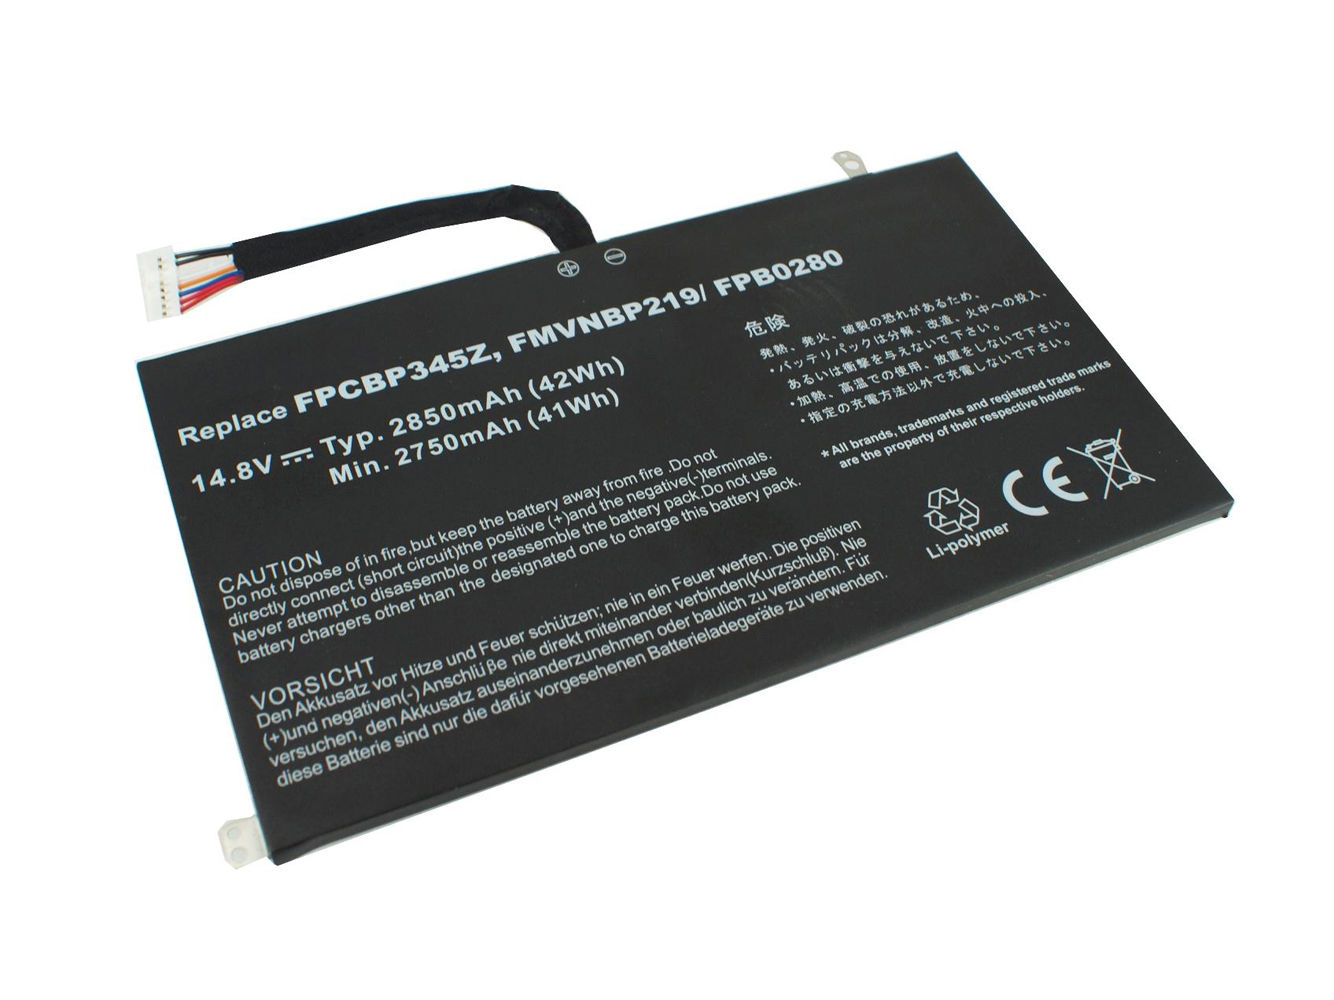 Bateria para 2850mAh Fujitsu UH572 FMVNBP219 FPB0280 FPCBP345Z